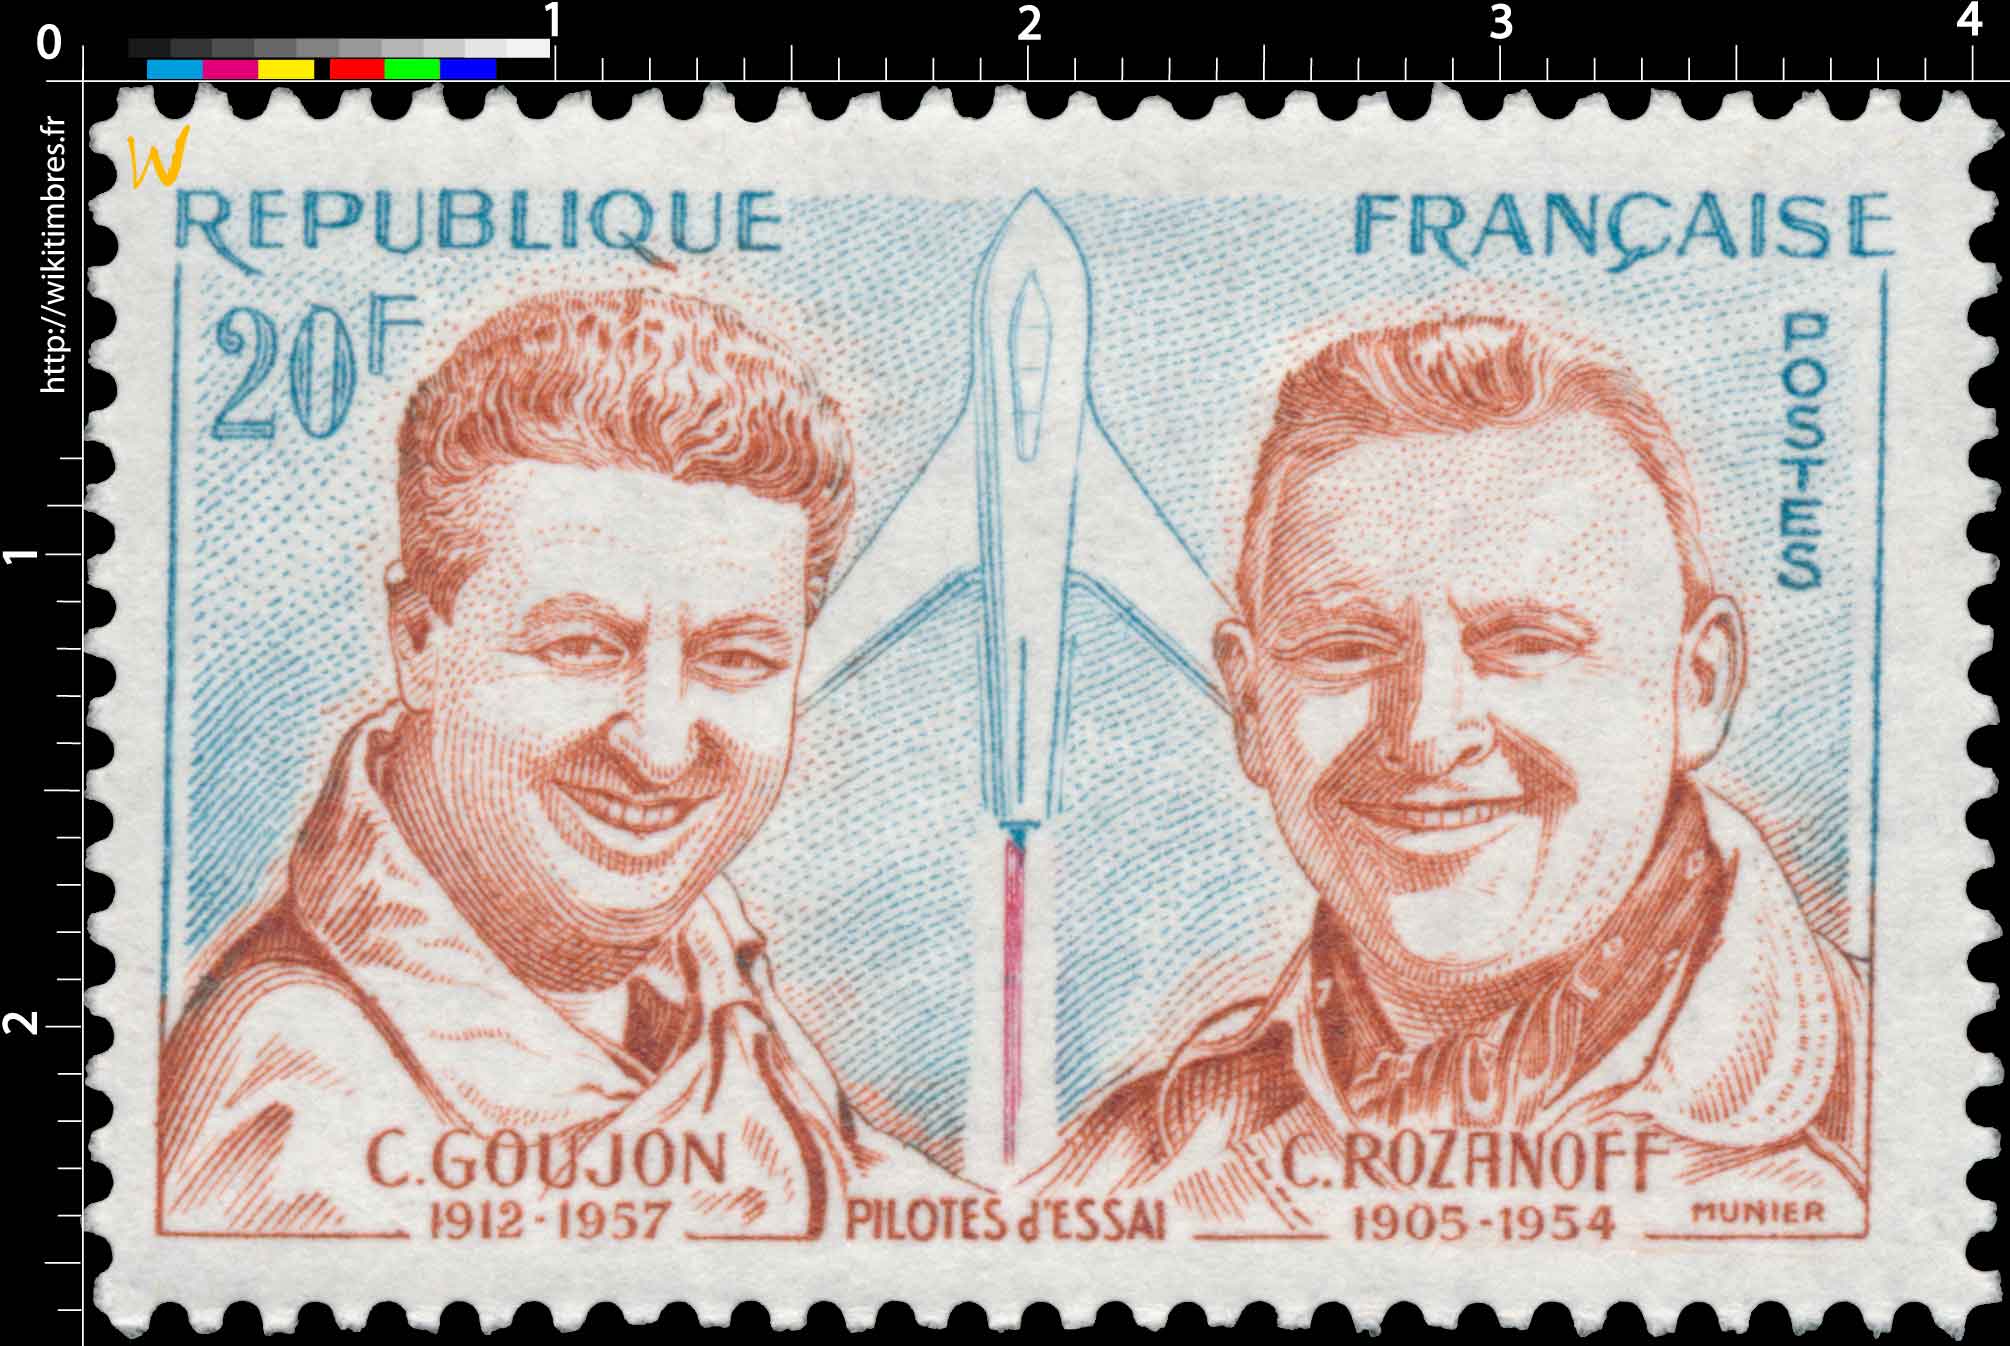 PILOTES d'ESSAI C. GOUJON 1912 - 1957 C. ROZANOFF 1905 - 1954